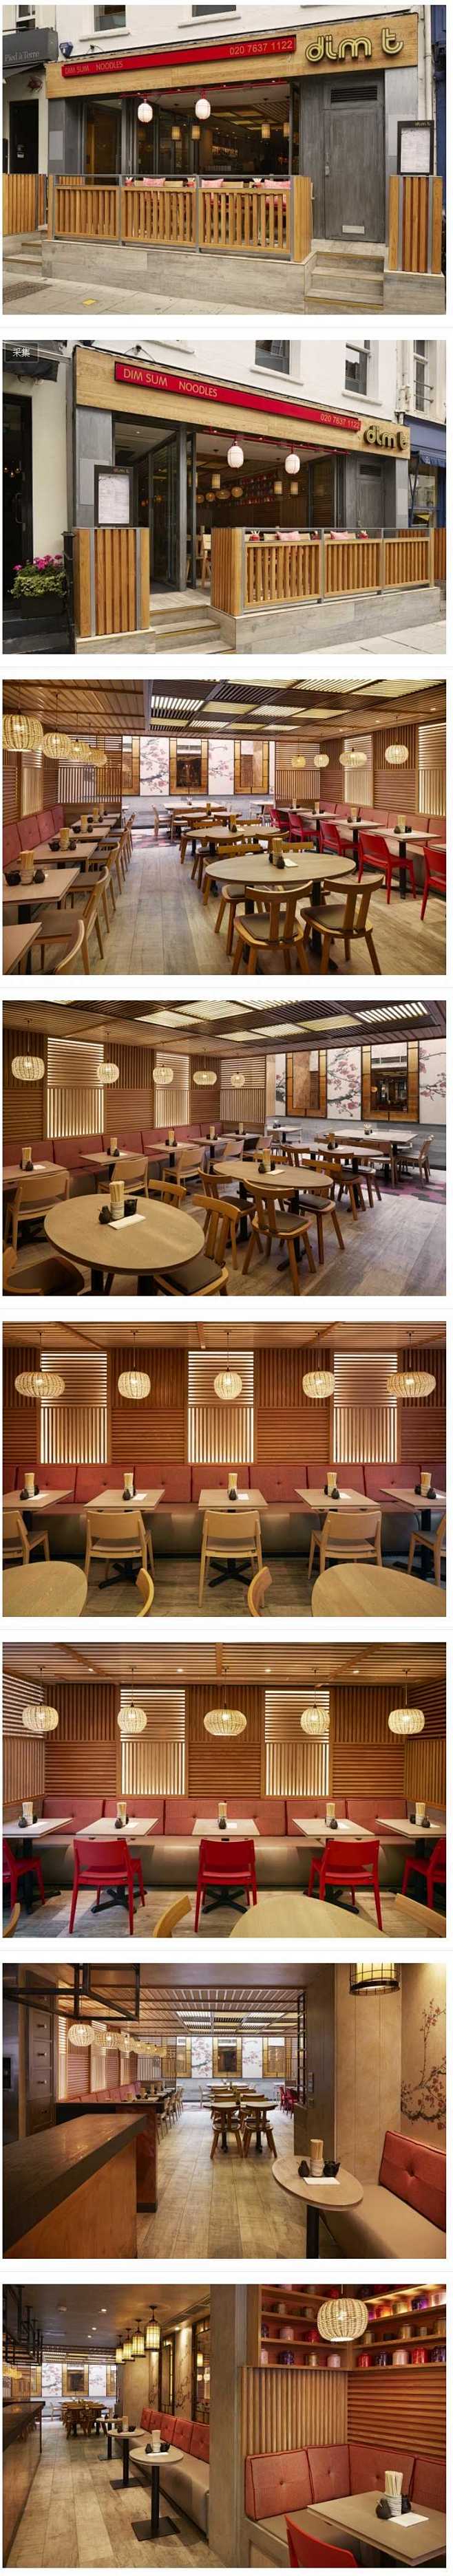 伦敦Dim T惬意舒适的亚洲餐厅空间设计...